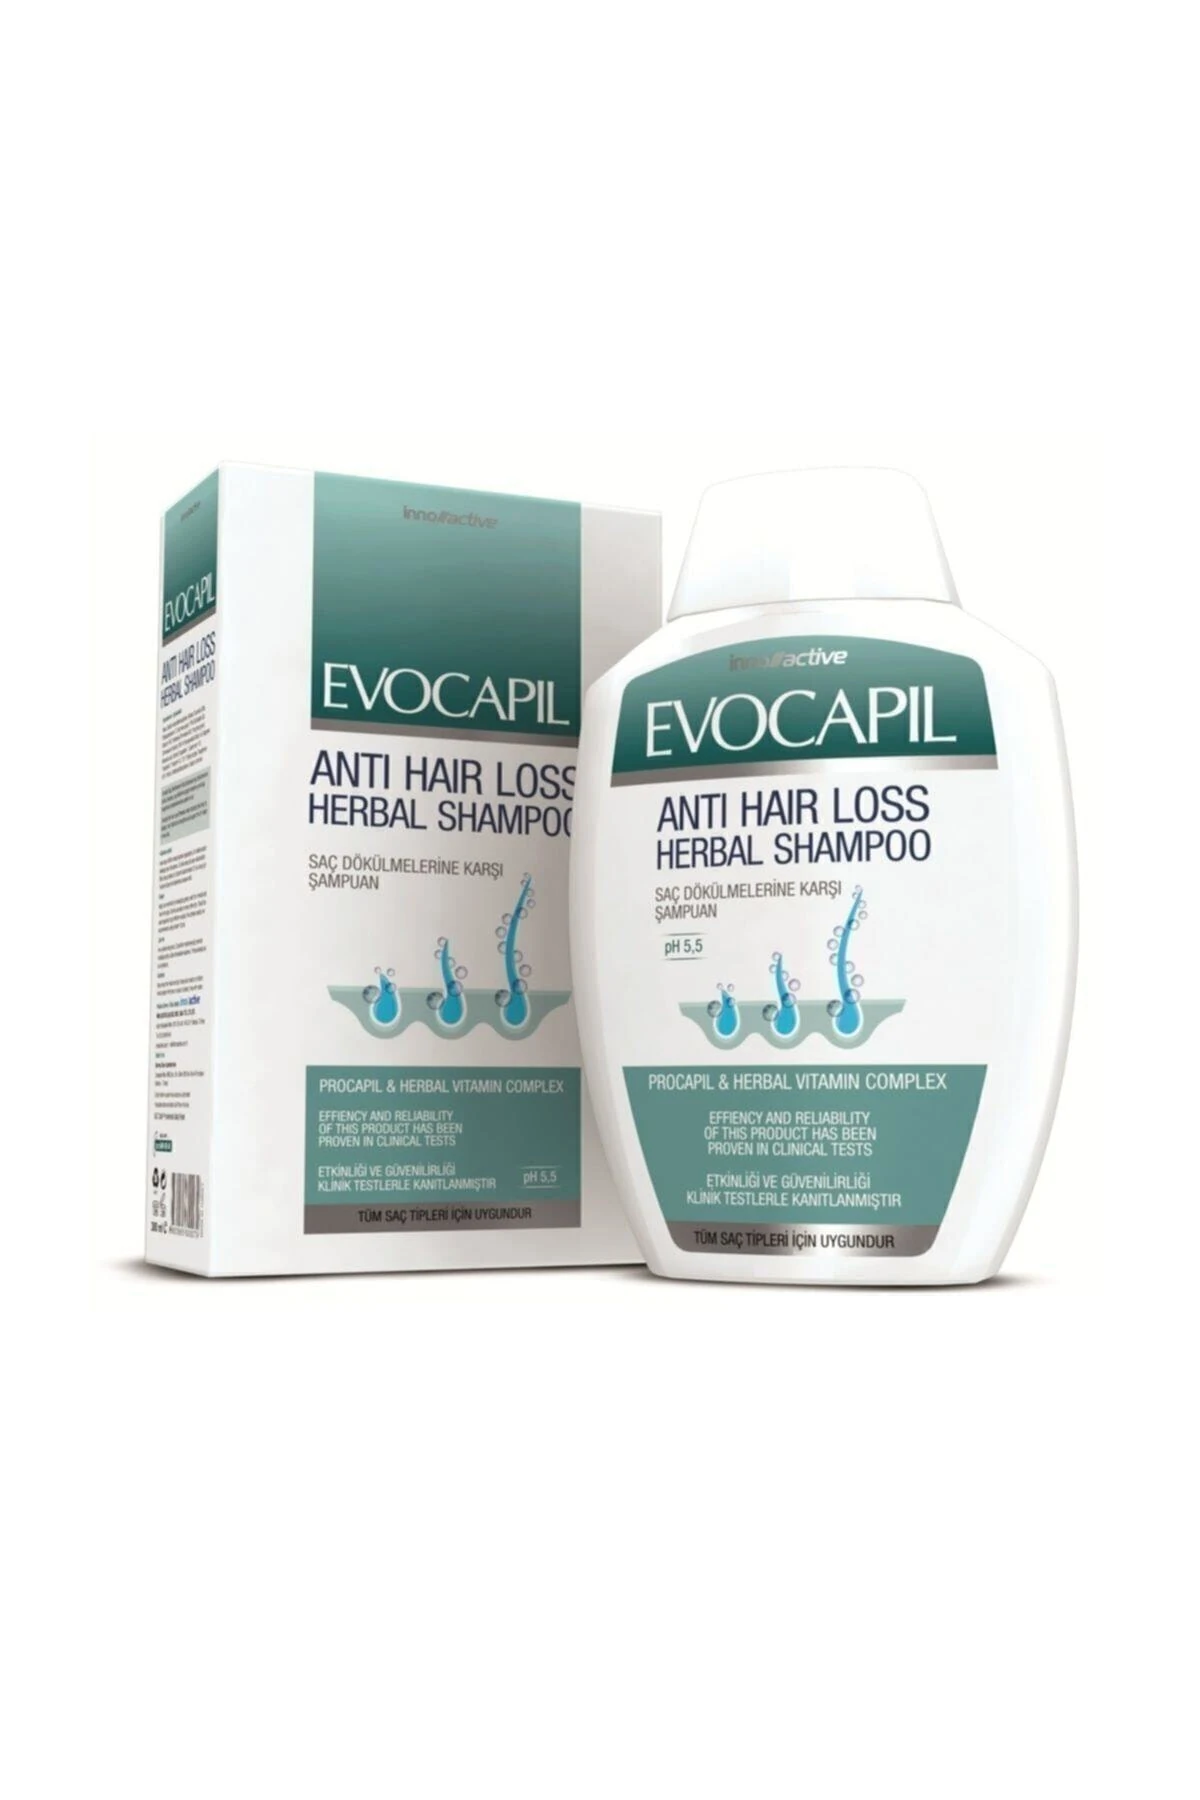 Evocapil Saç Dökülmelerine Karşı Doğal Procapil Şampuan 300ml Yeni Ürün